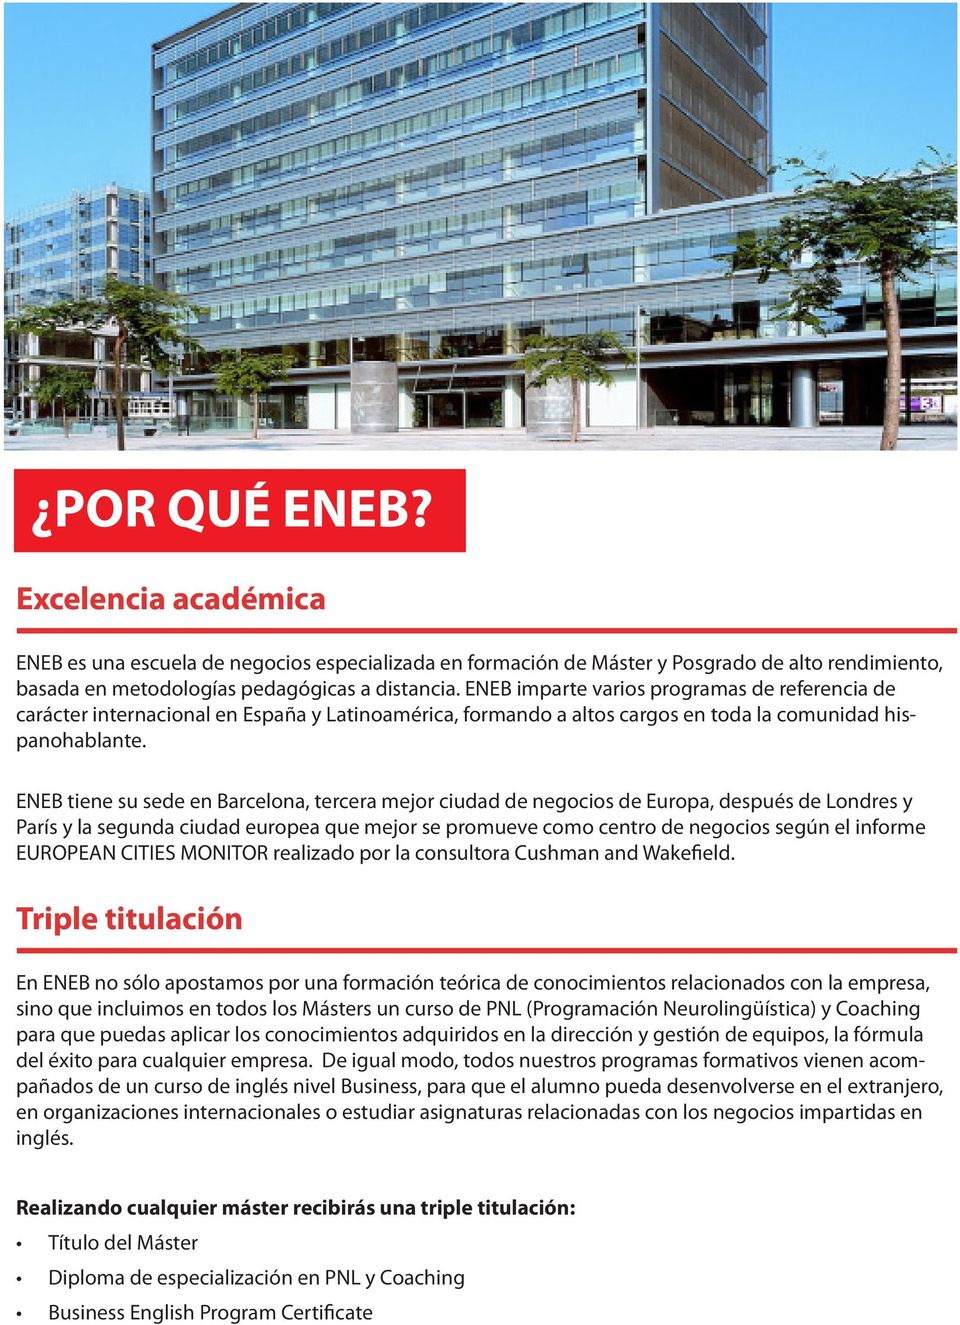 ENEB tiene su sede en Barcelona, tercera mejor ciudad de negocios de Europa, después de Londres y París y la segunda ciudad europea que mejor se promueve como centro de negocios según el informe